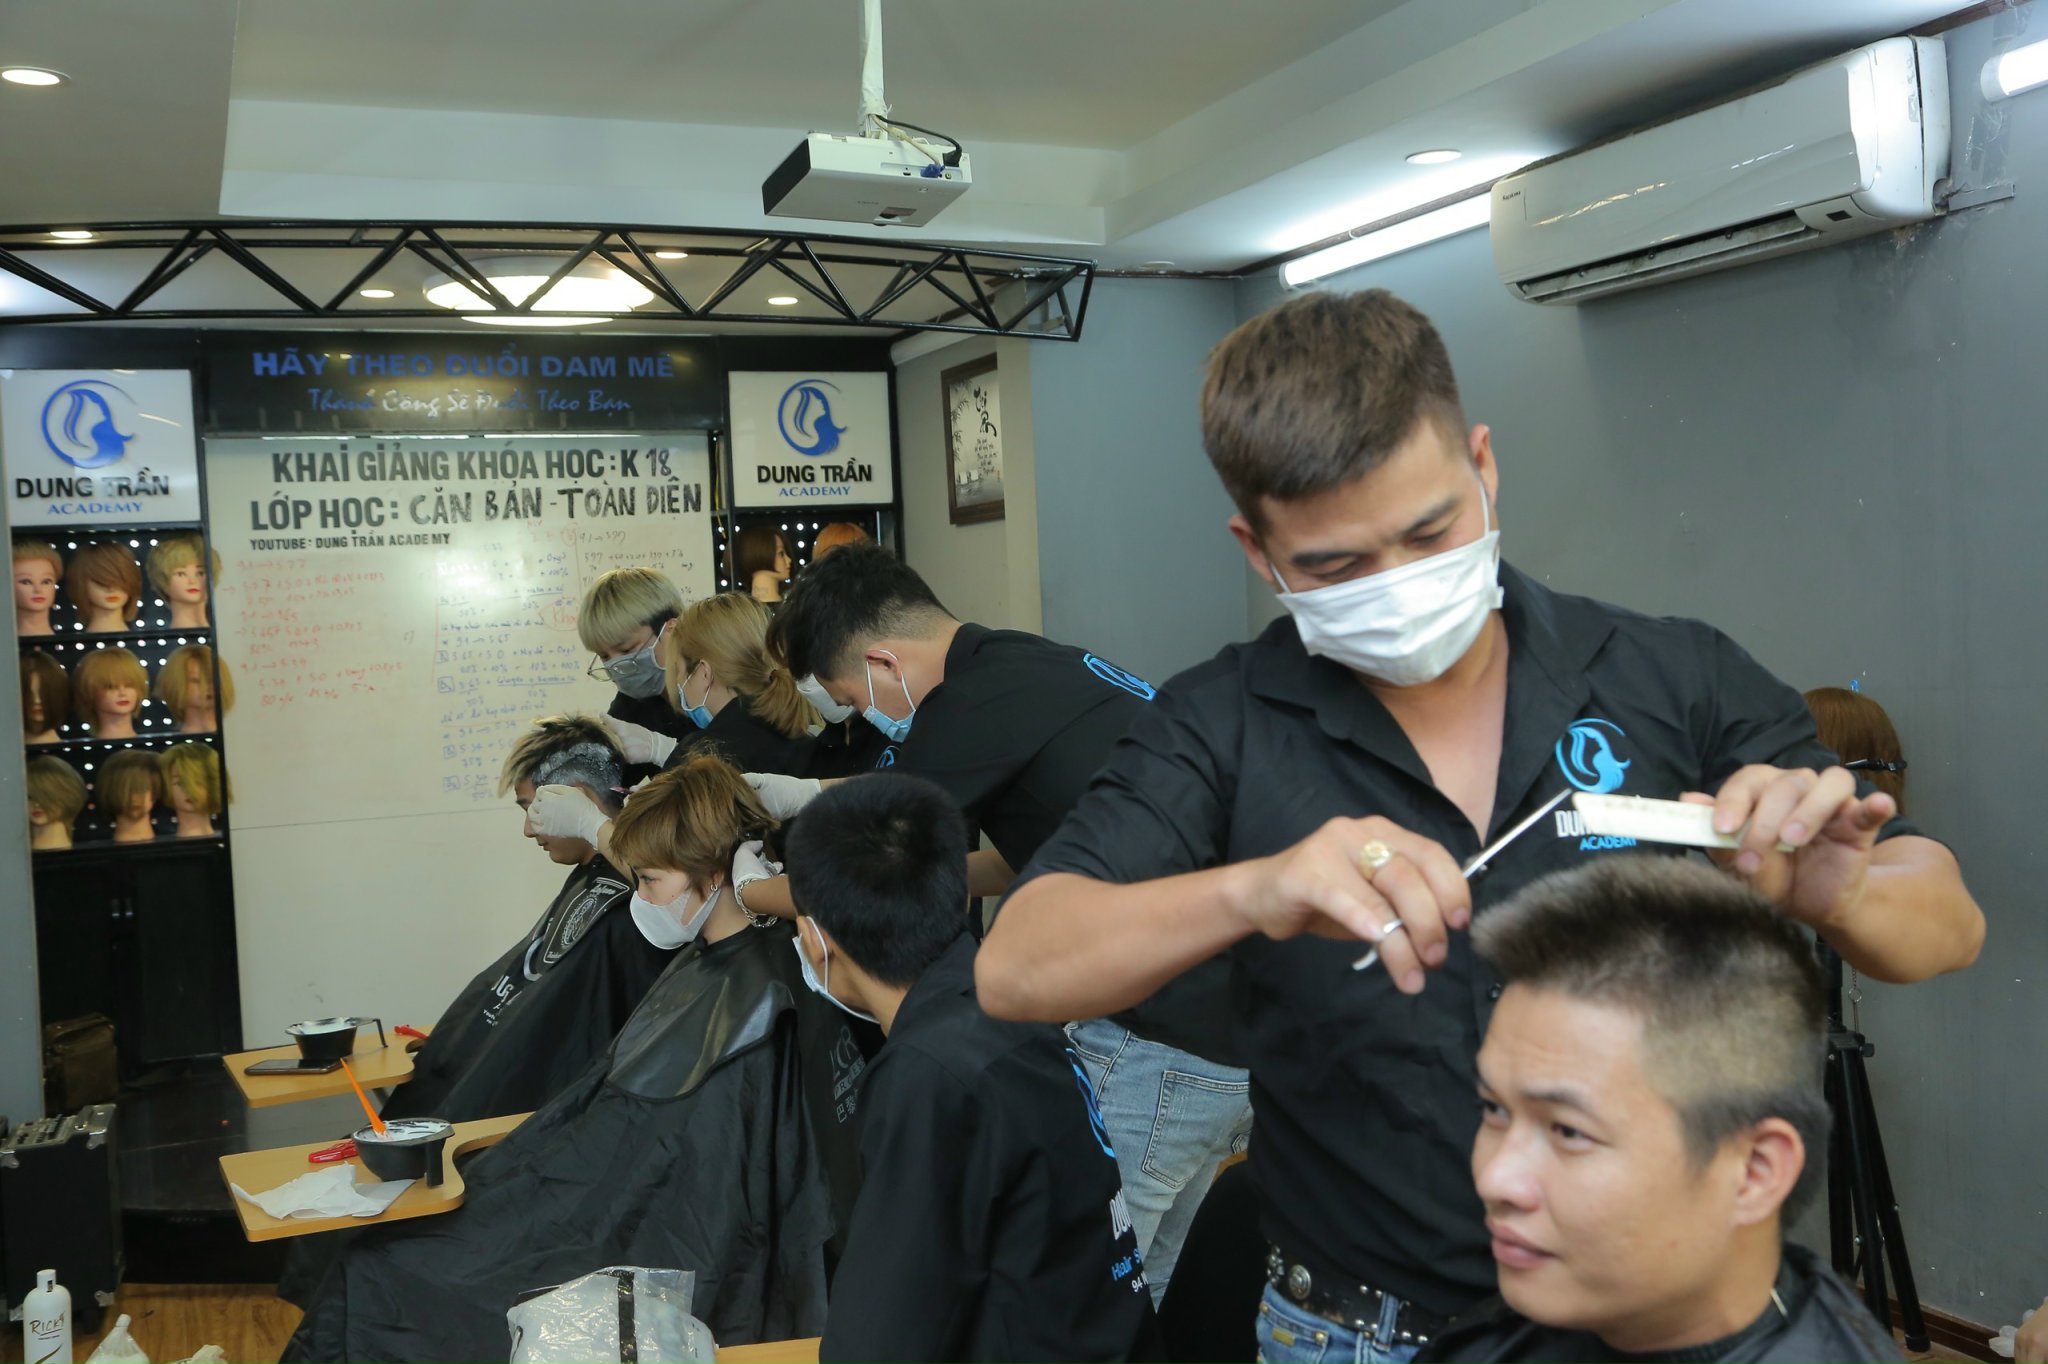 Dung Trần Hair Academy - Địa chỉ học nghề tóc tại Hà Nội uy tín